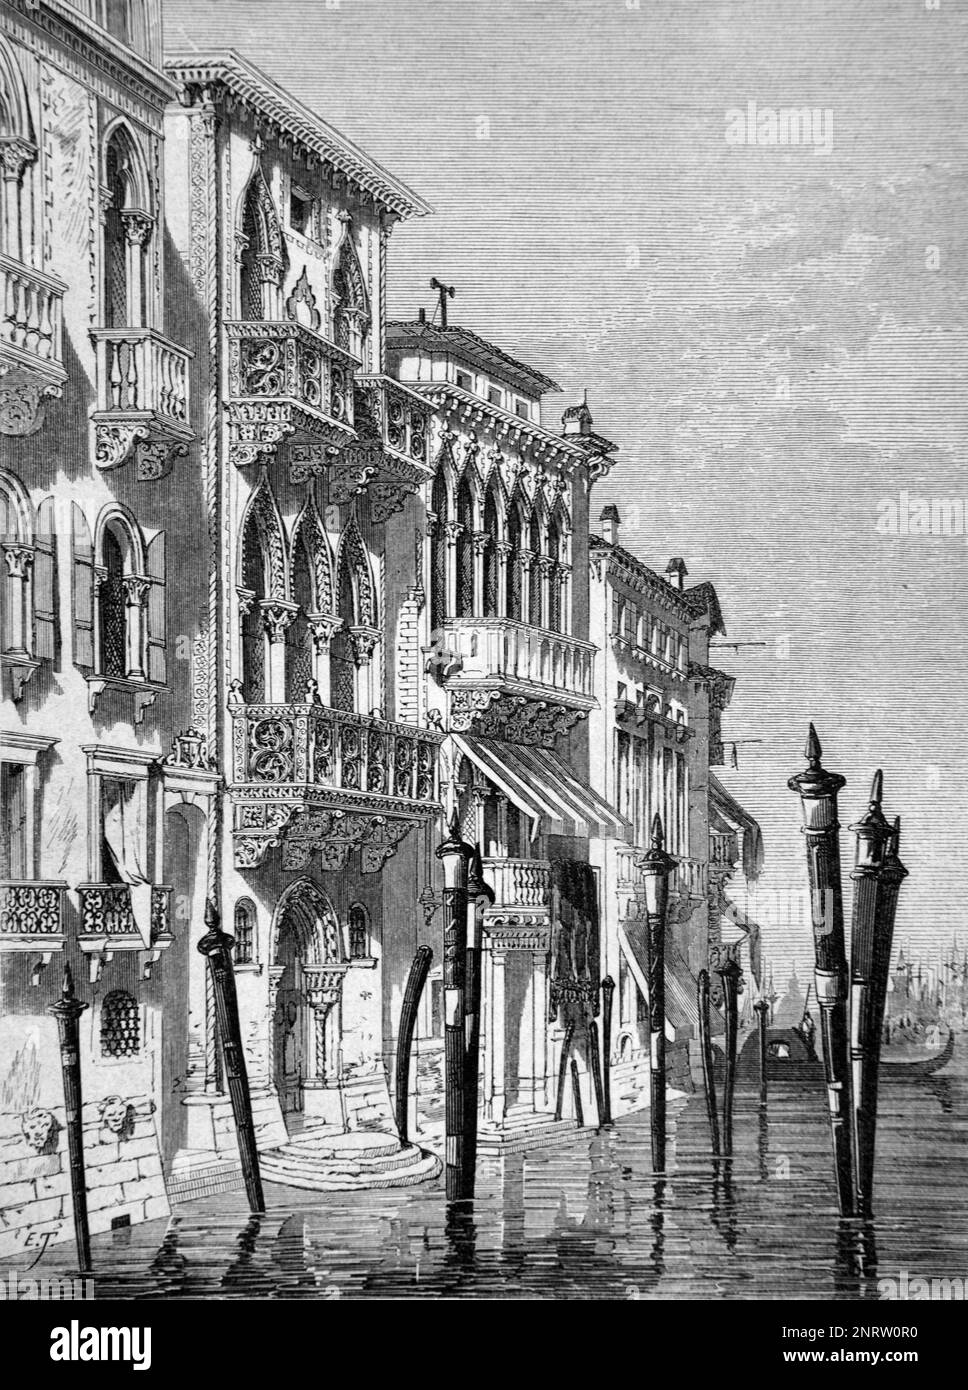 Palazzo Ferro fini (c Ou), Palais vénitien, sur le Grand Canal de Venise Italie. Gravure vintage ou Illustration1862 Banque D'Images